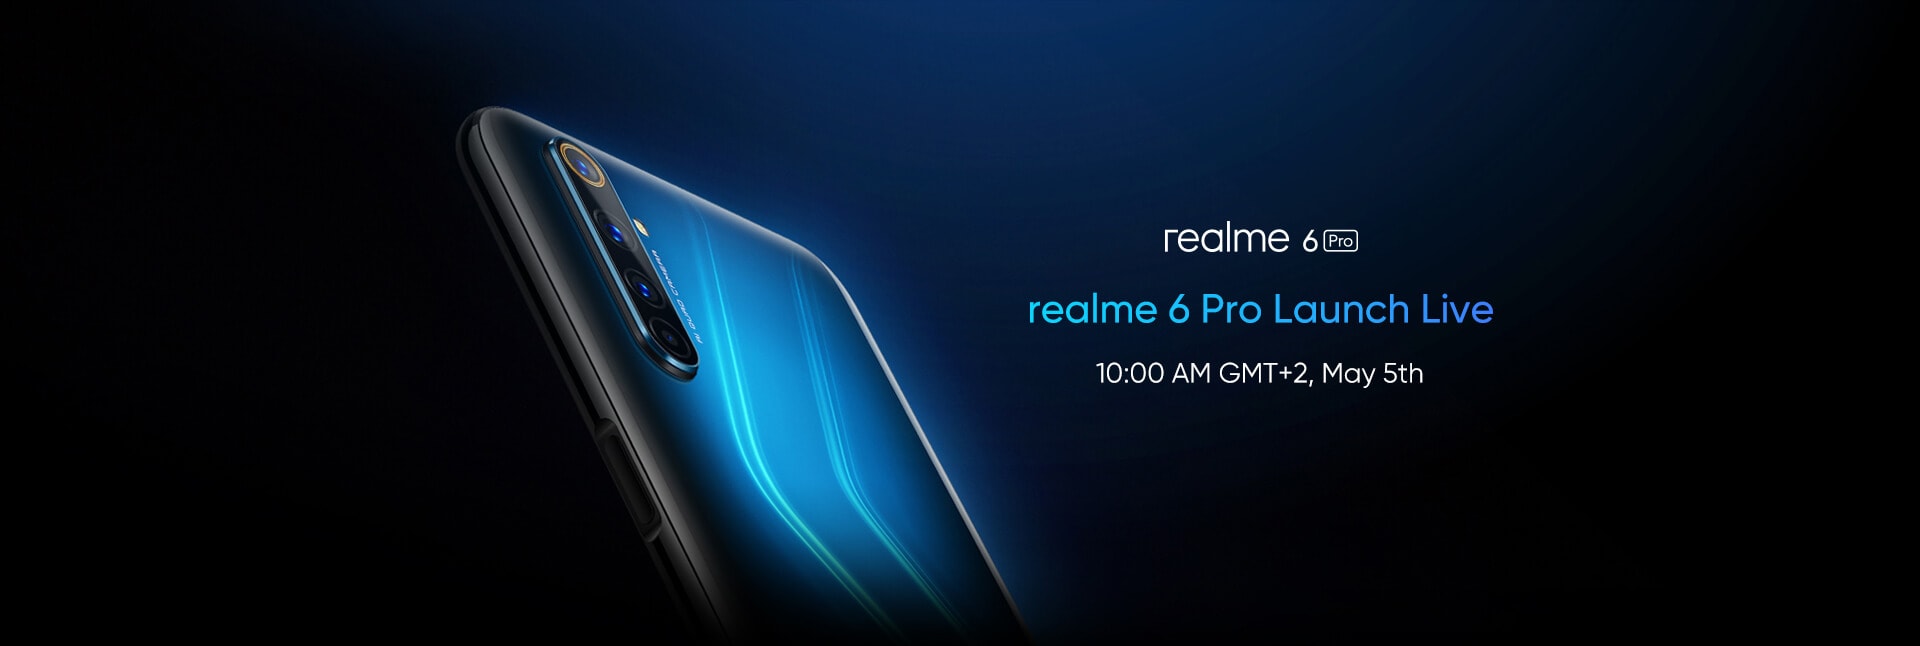 Realme 6 Pro: evento de lanzamiento europeo el 5 de mayo y si lo sigues en vivo, ¡incluso puedes ganar premios!